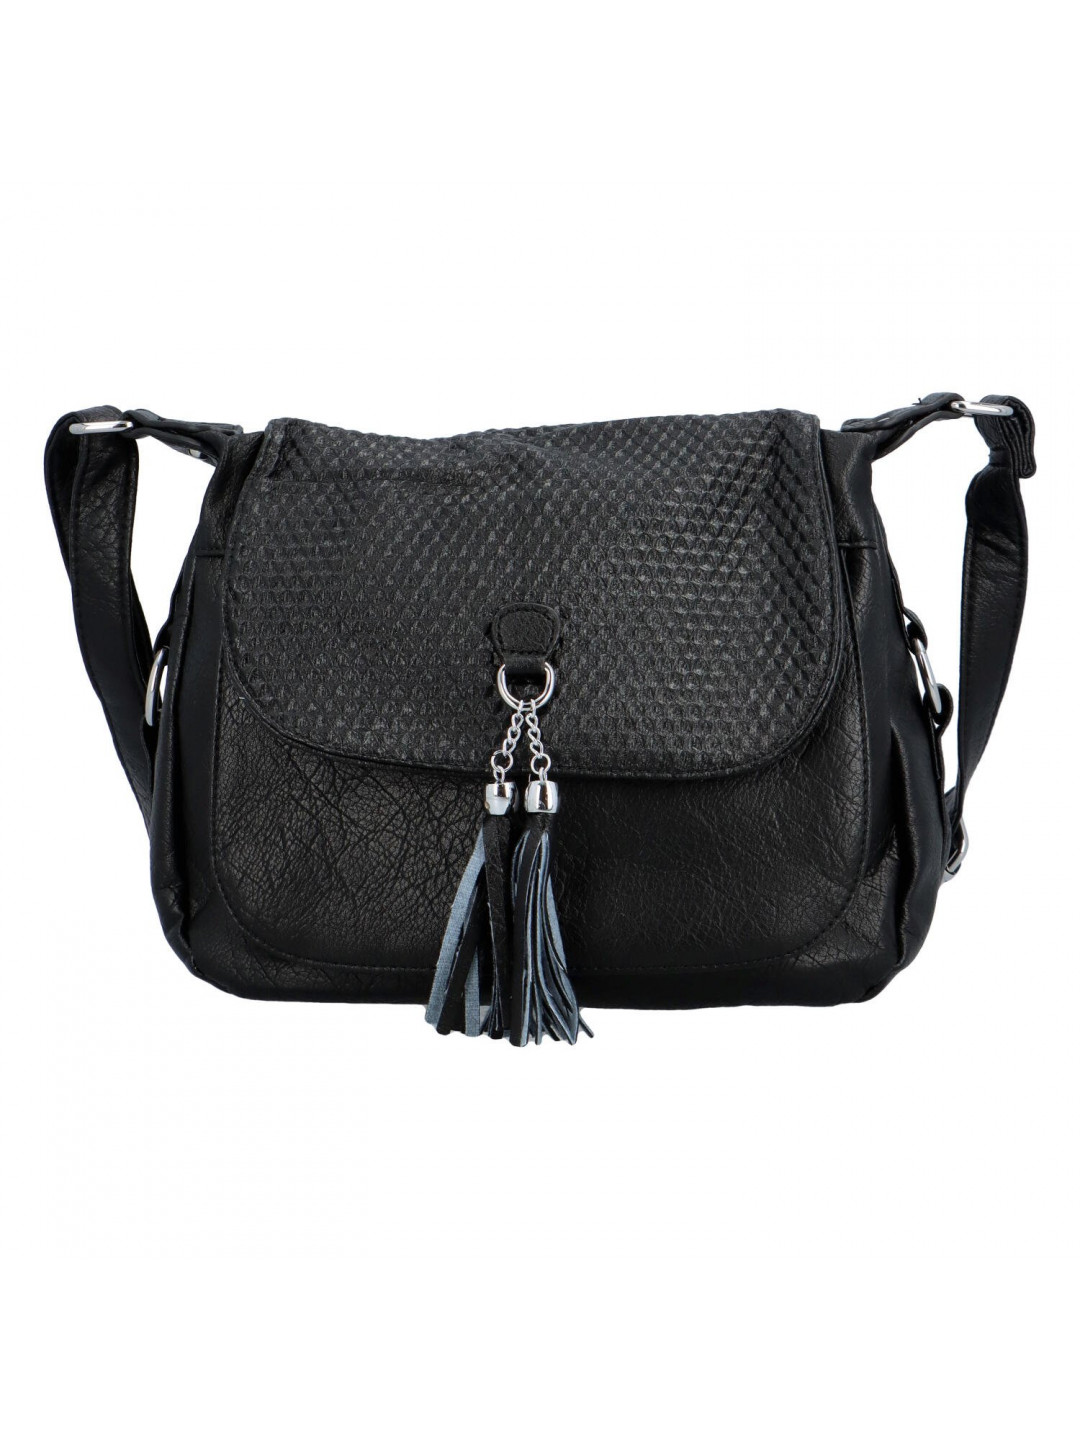 Dámská koženková kabelka s výraznou klopou Gallina černá